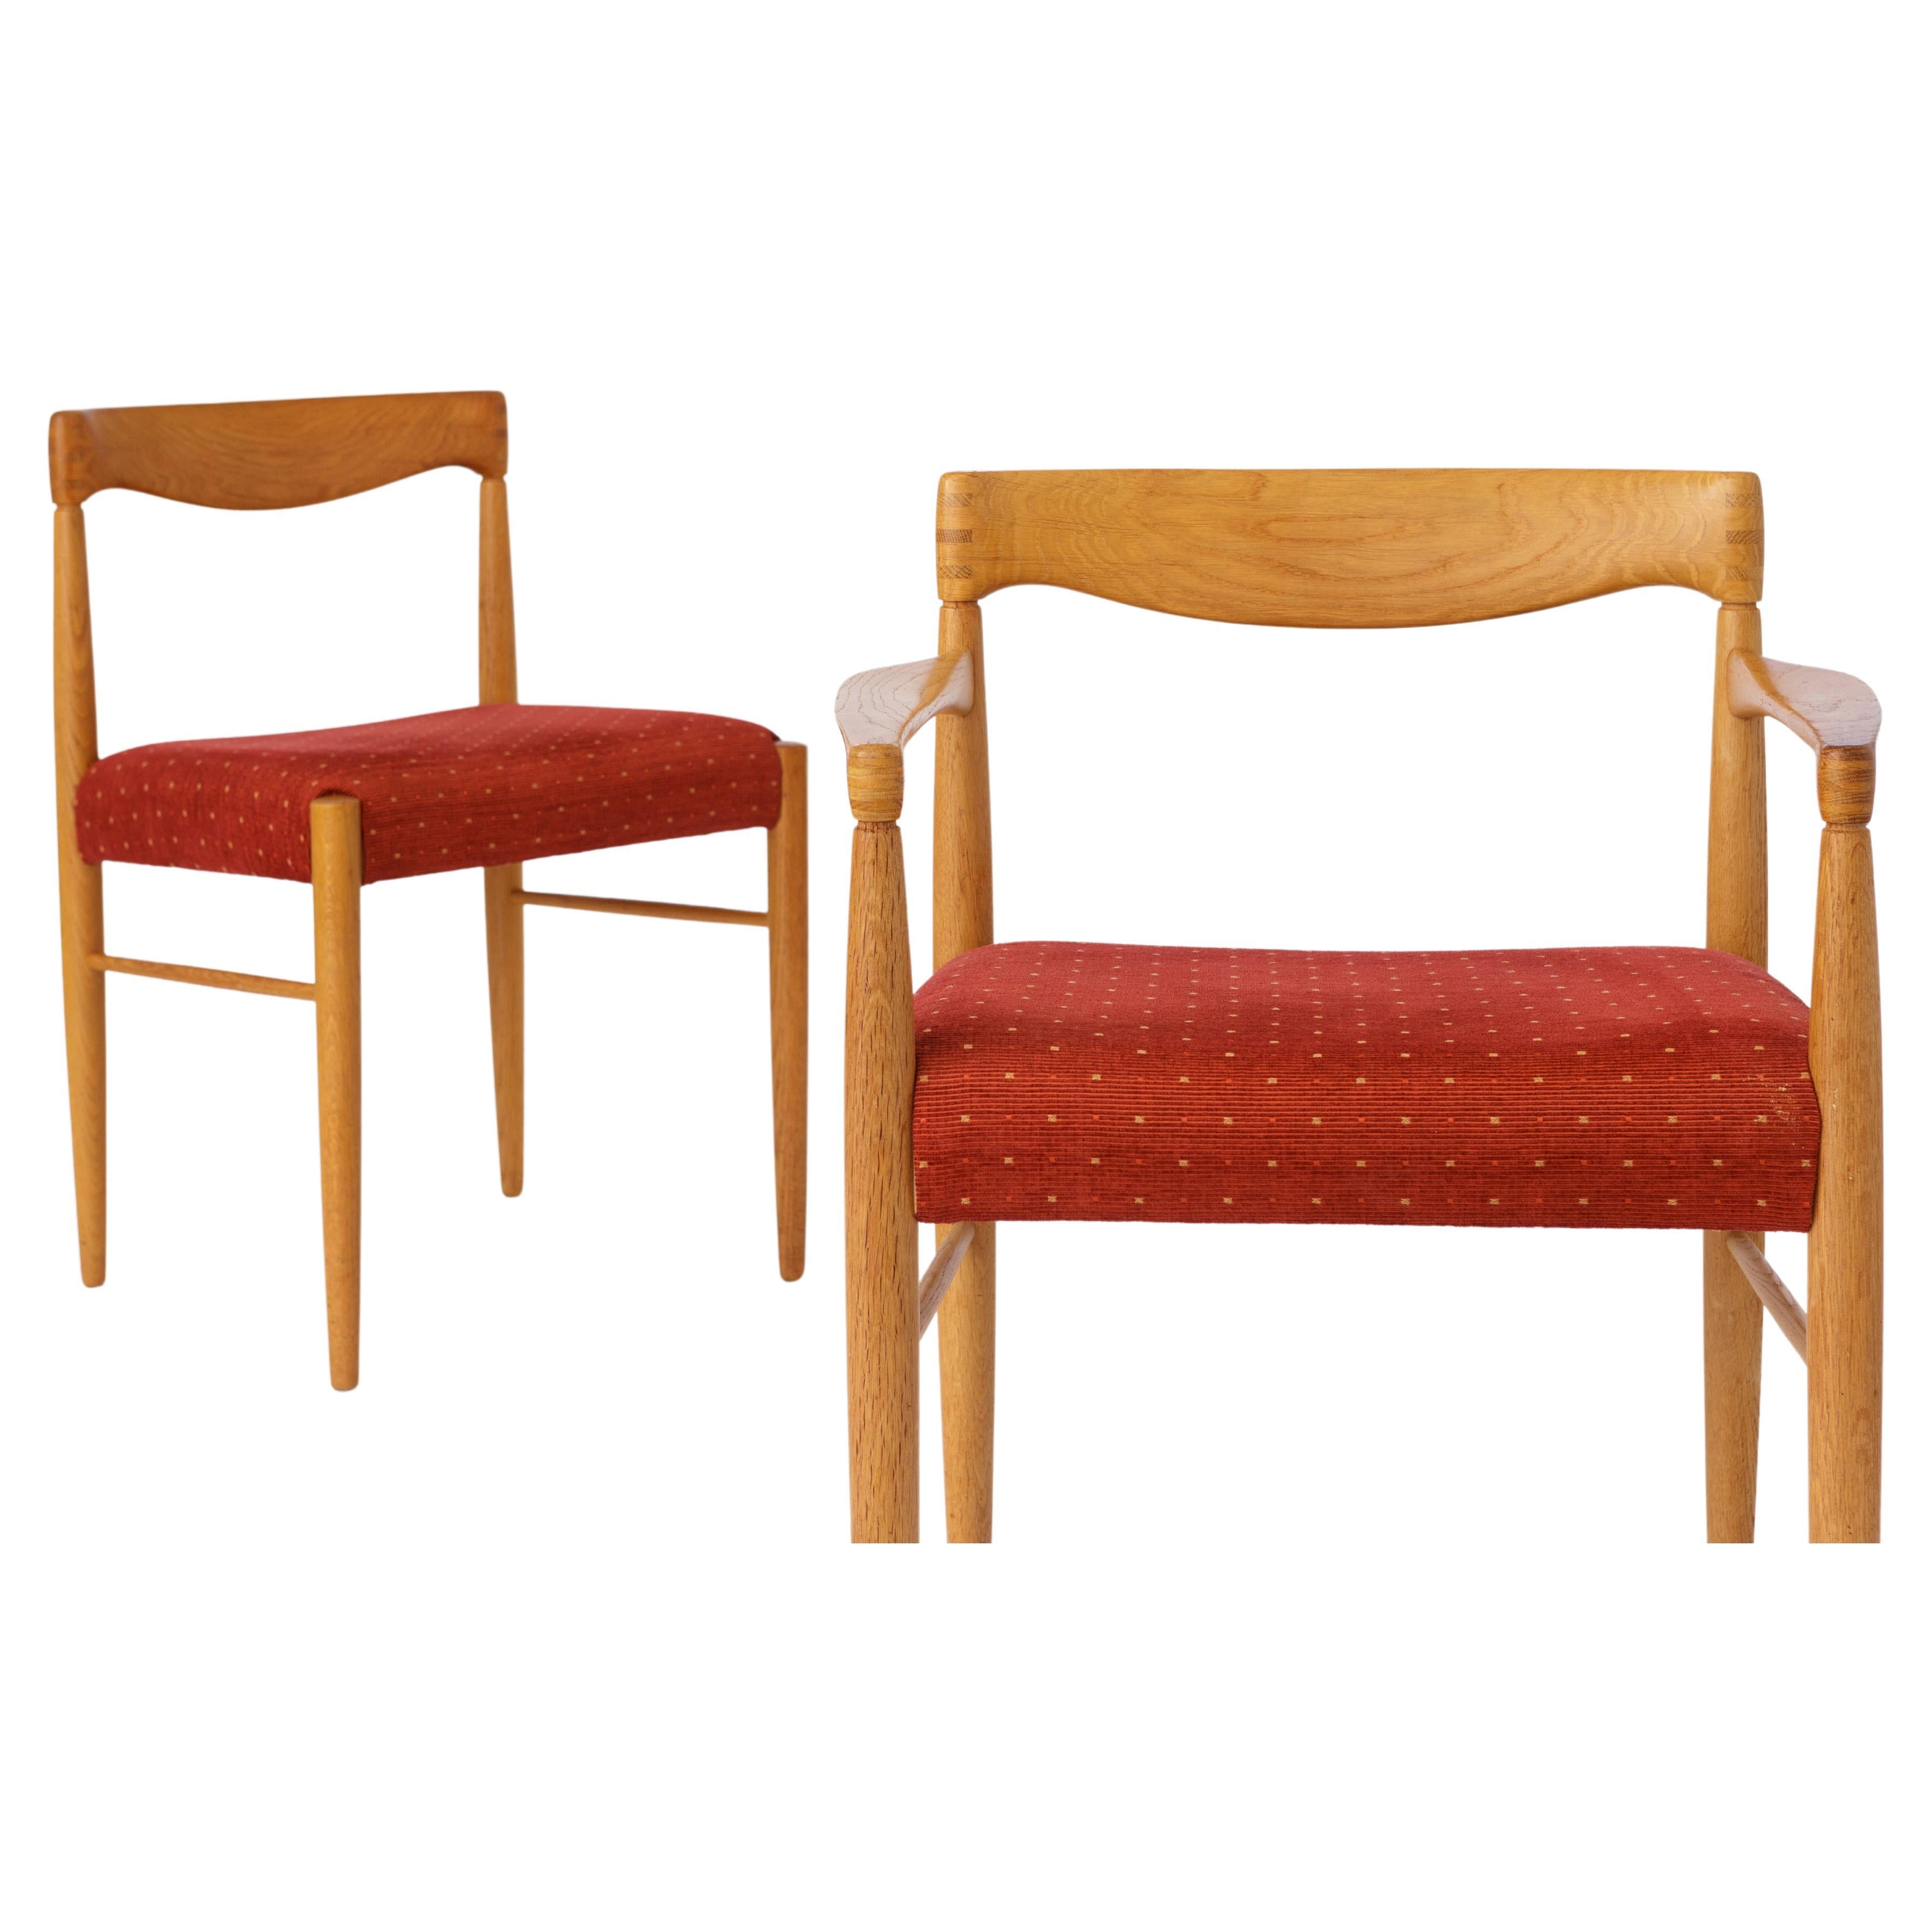 In progress: Set of 8 oak chairs, by H.W. Klein for Bramin, 1960s Denmark